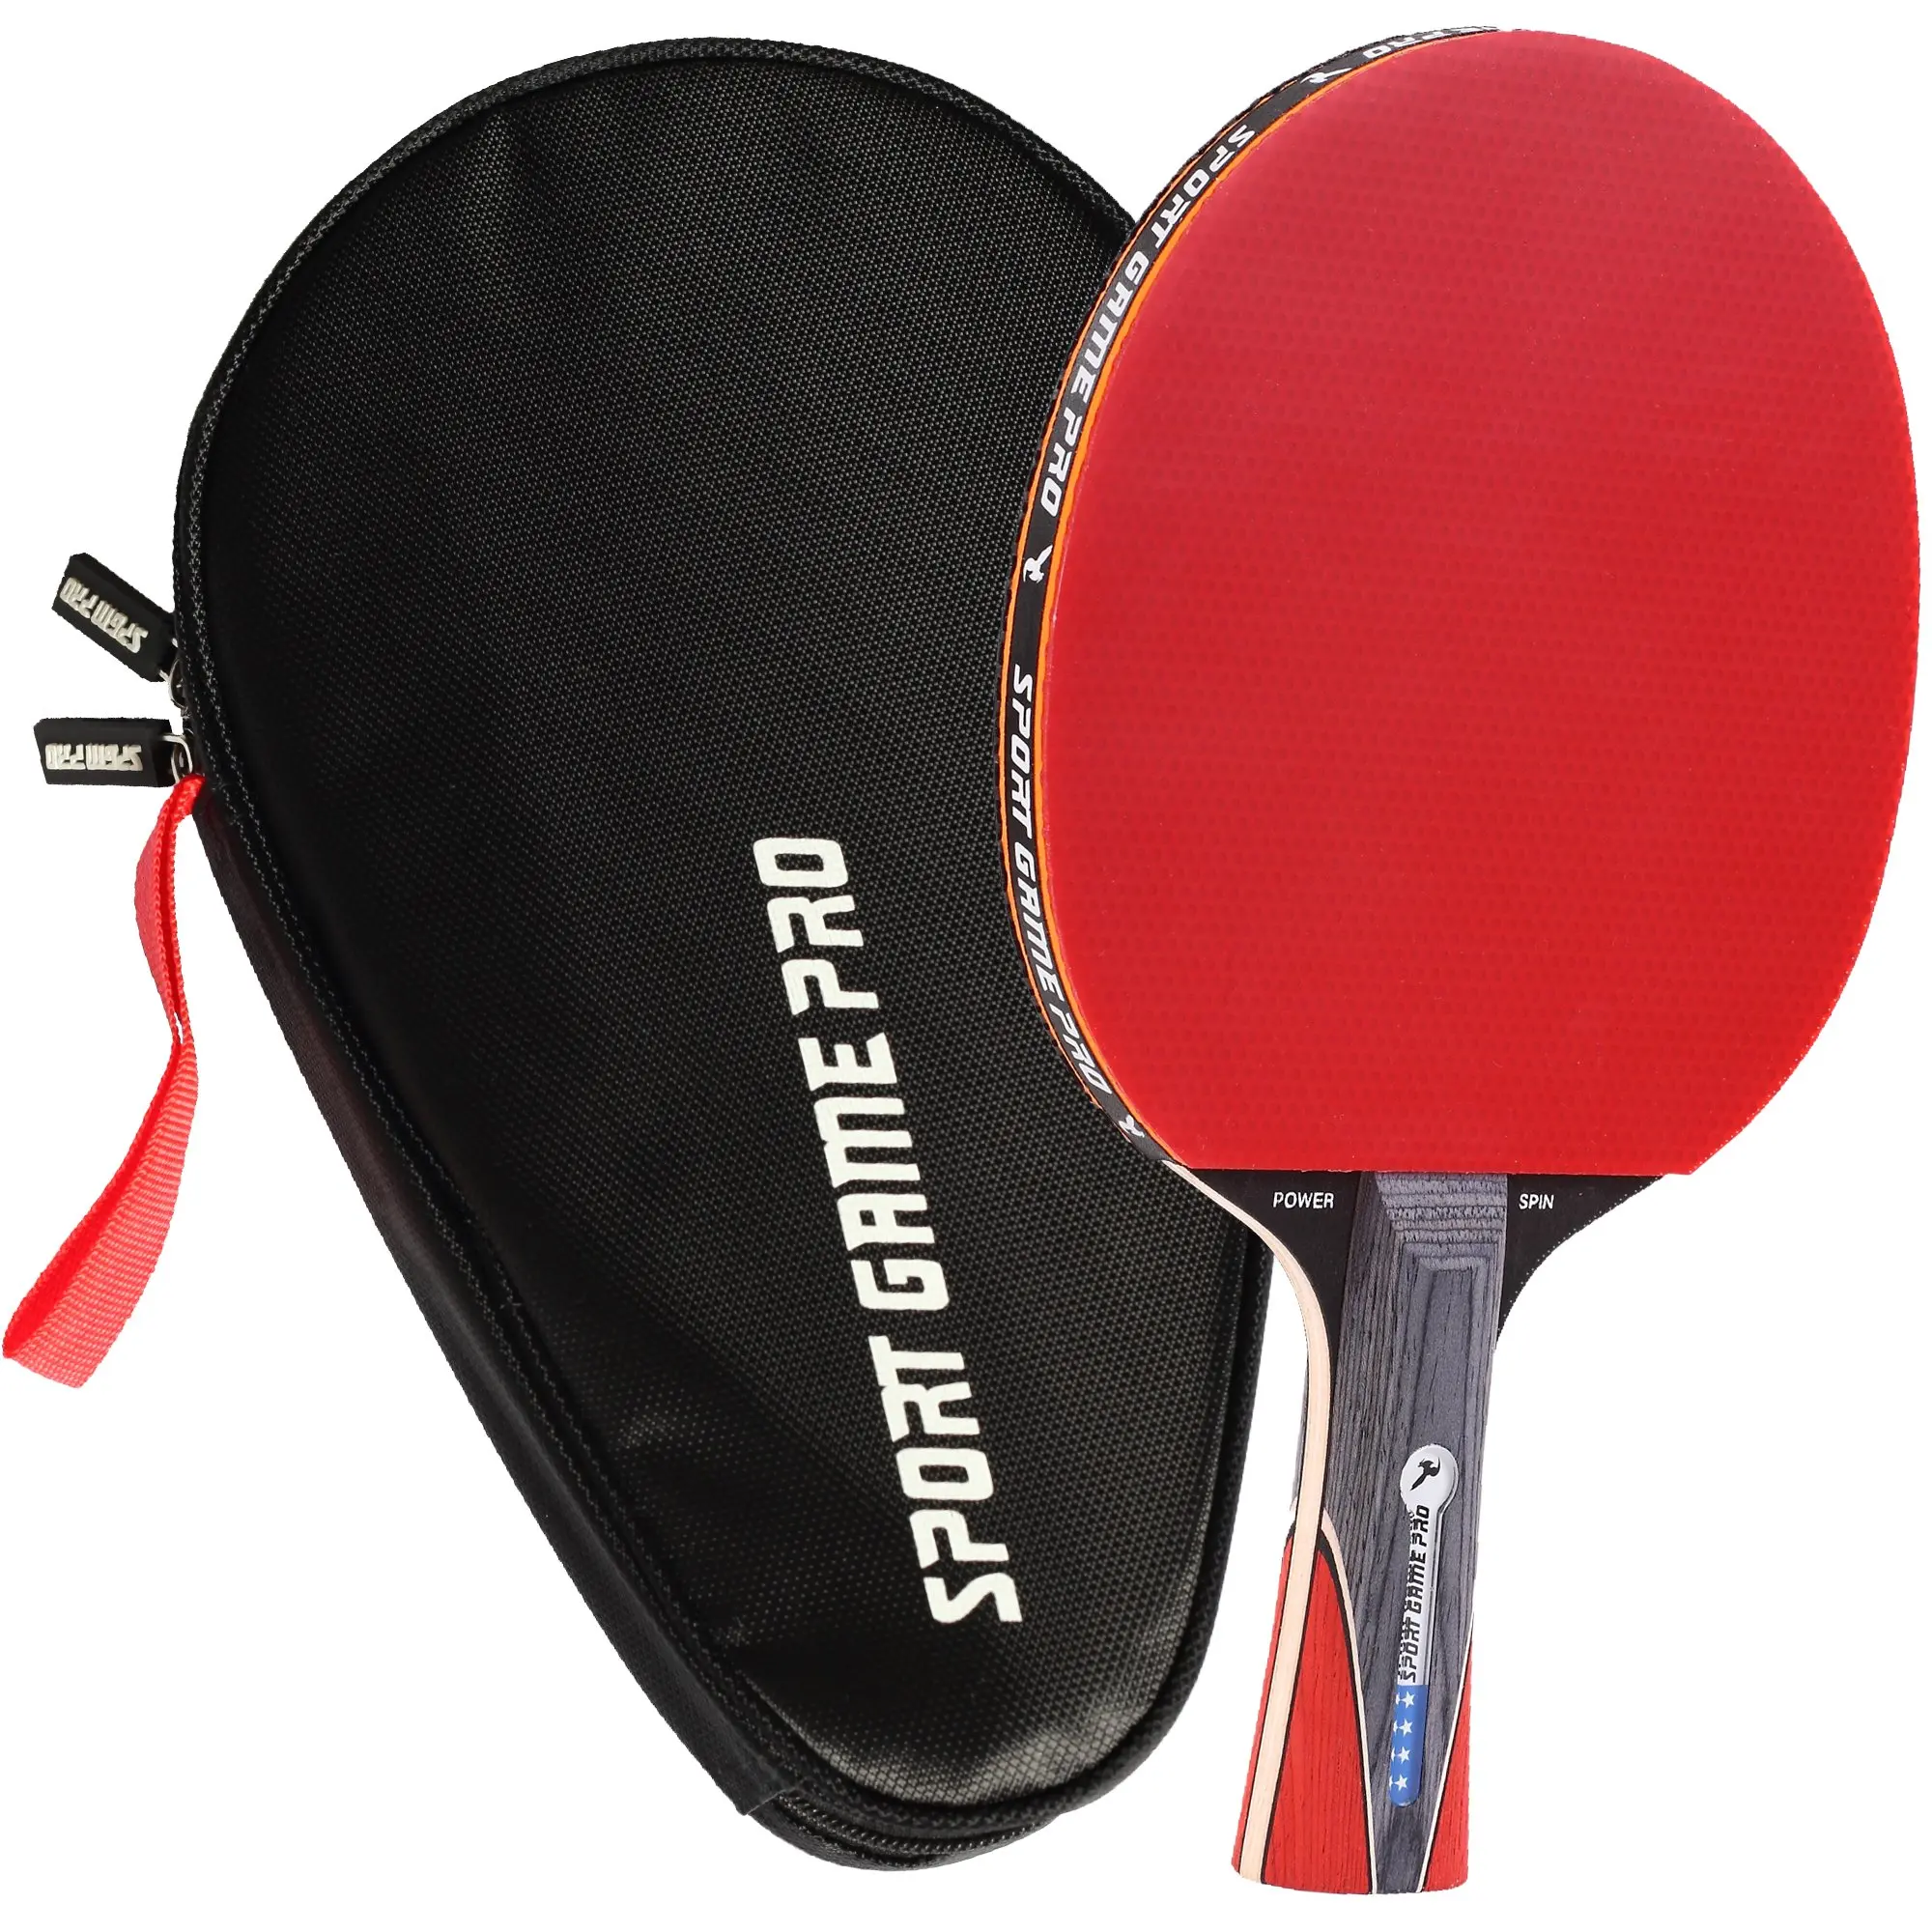 Высота ракетки для настольного тенниса. Ракетка для Paddle Tennis. Table Tennis Racket набор. ARTENGO ракетки для настольного тенниса. Ракетка Dobest Champion line 6.